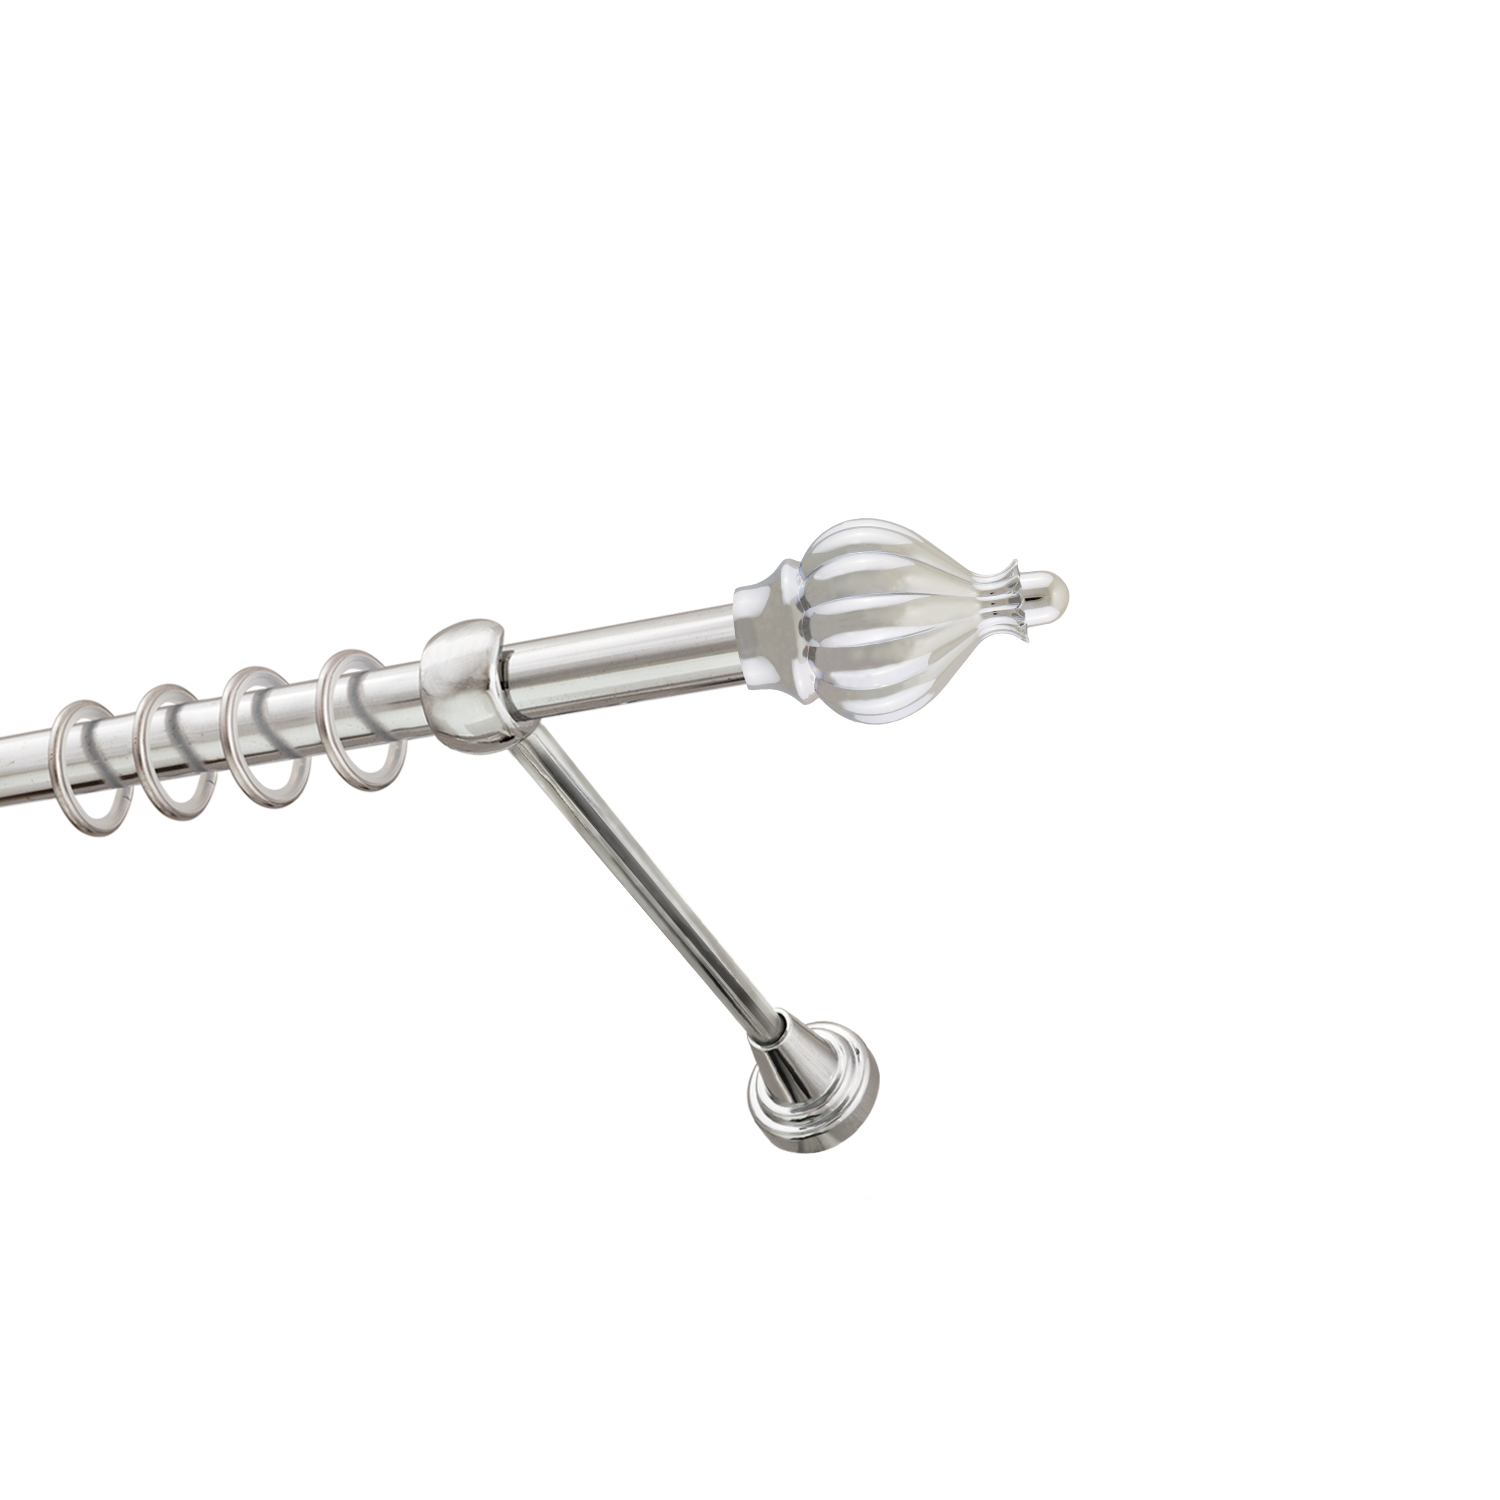 Металлический карниз для штор Афродита, однорядный 16 мм, серебро, гладкая штанга, длина 200 см